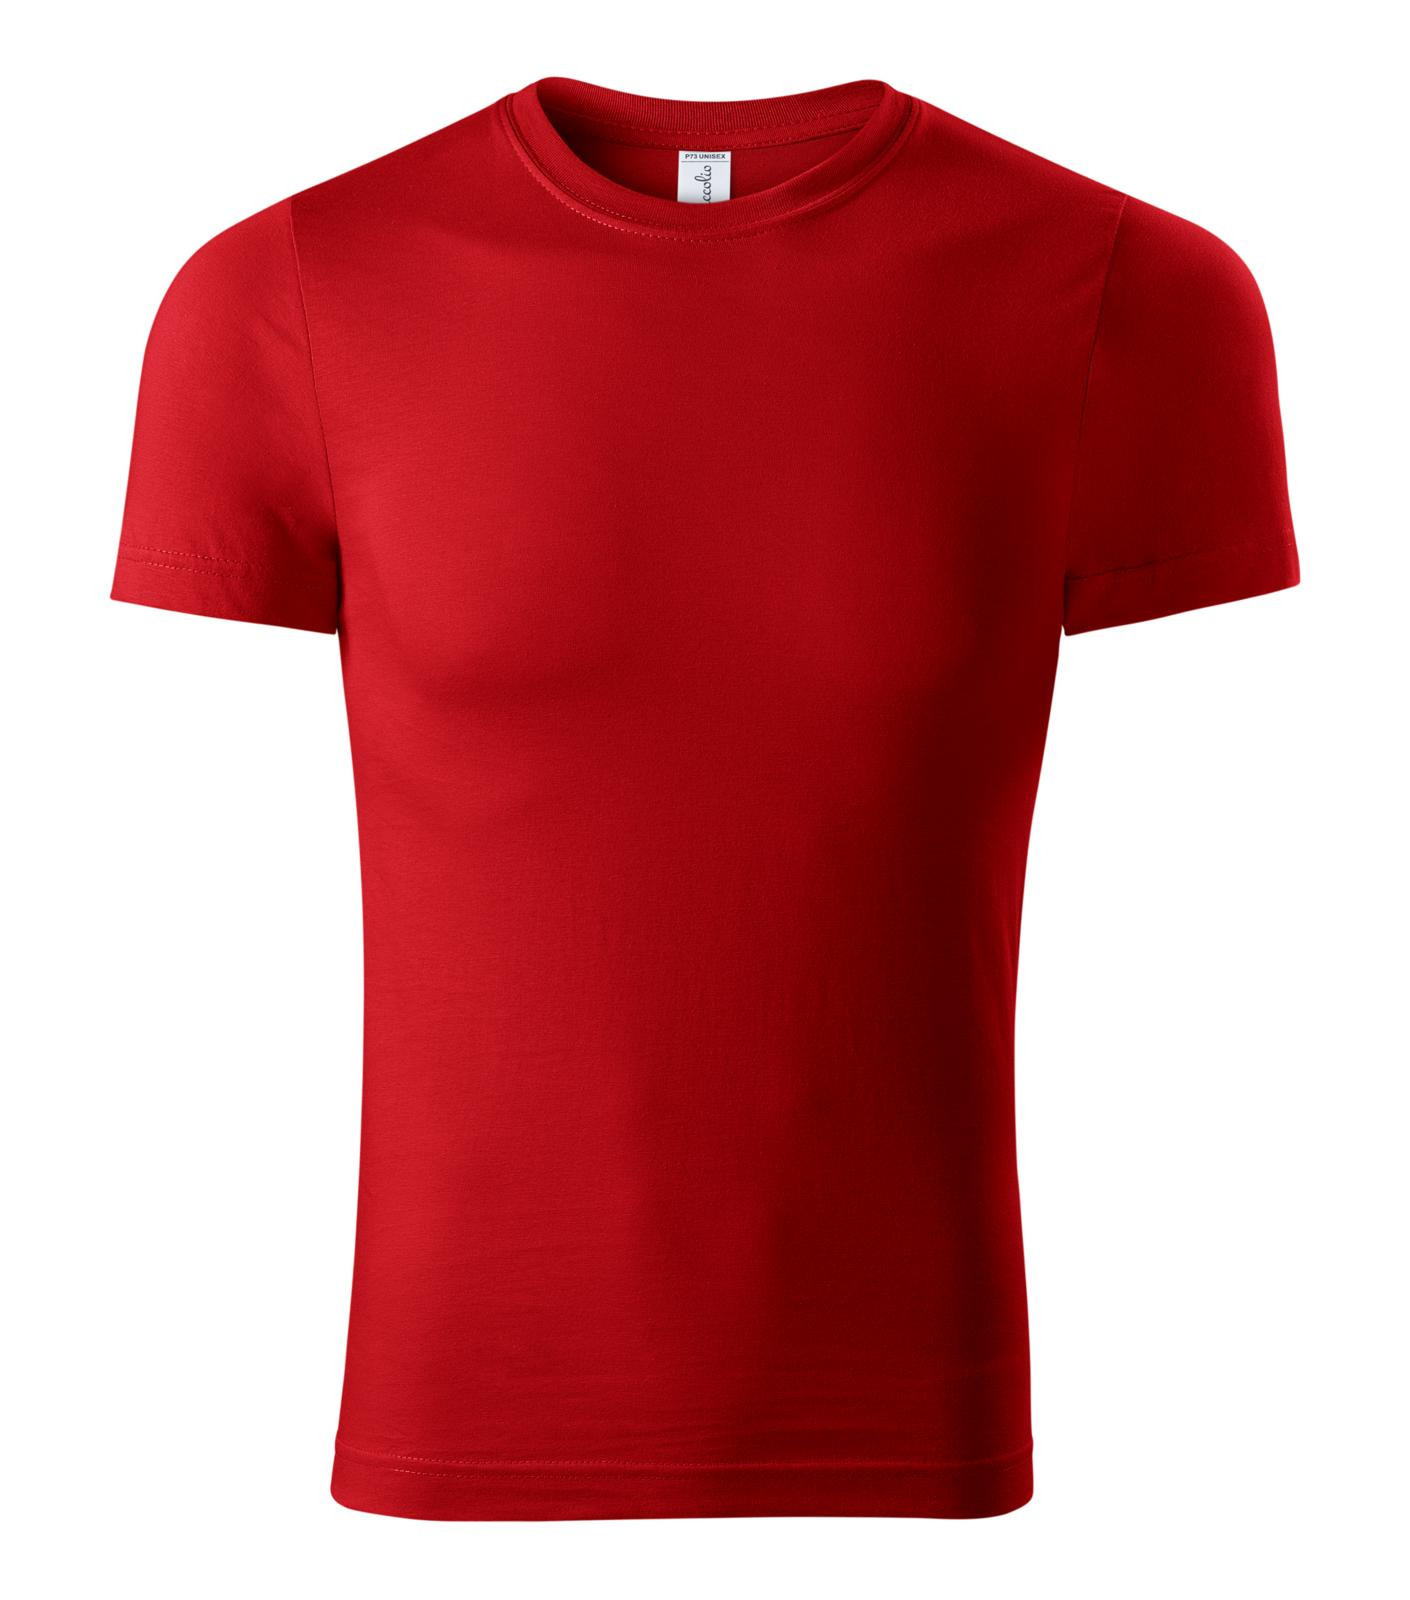 Unisex tričko Piccolio Paint P73 - veľkosť: L, farba: červená